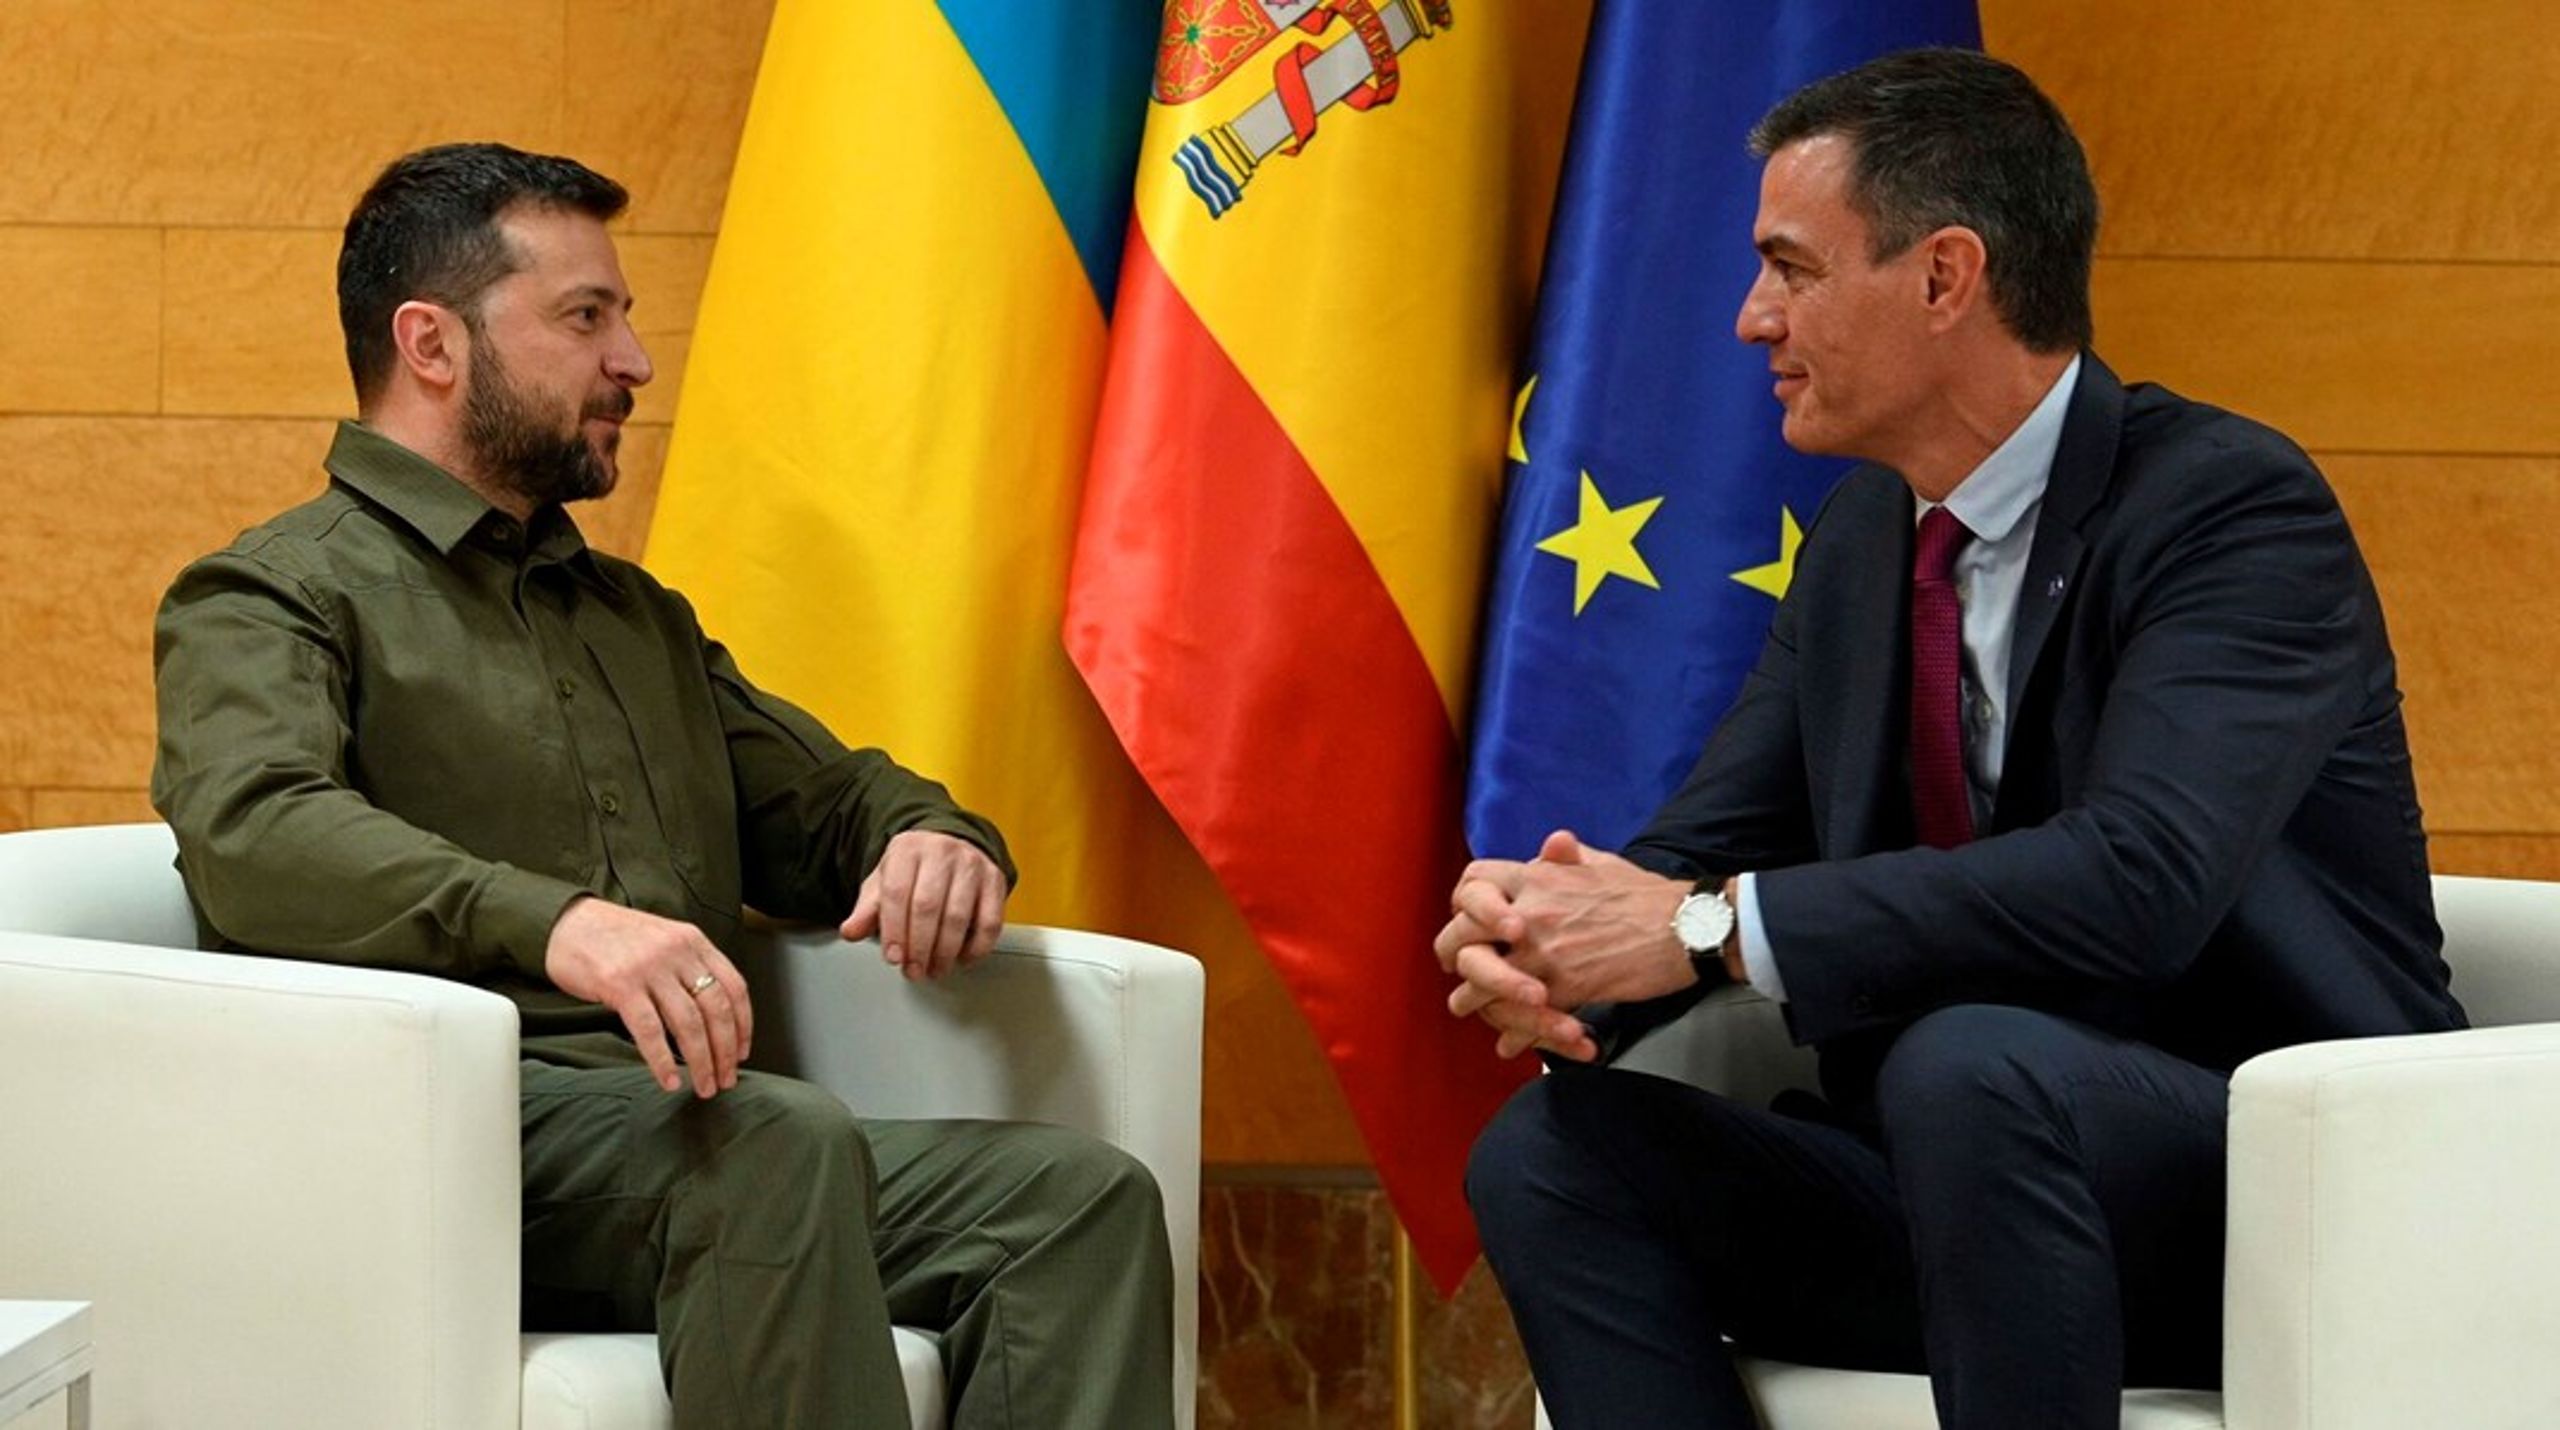 Den ukrainske præsident, Volodymyr Zelenskyj, var én af de gæster, topmødets spanske vært, Pedro Sanchez, ikke havde annonceret på forhånd.